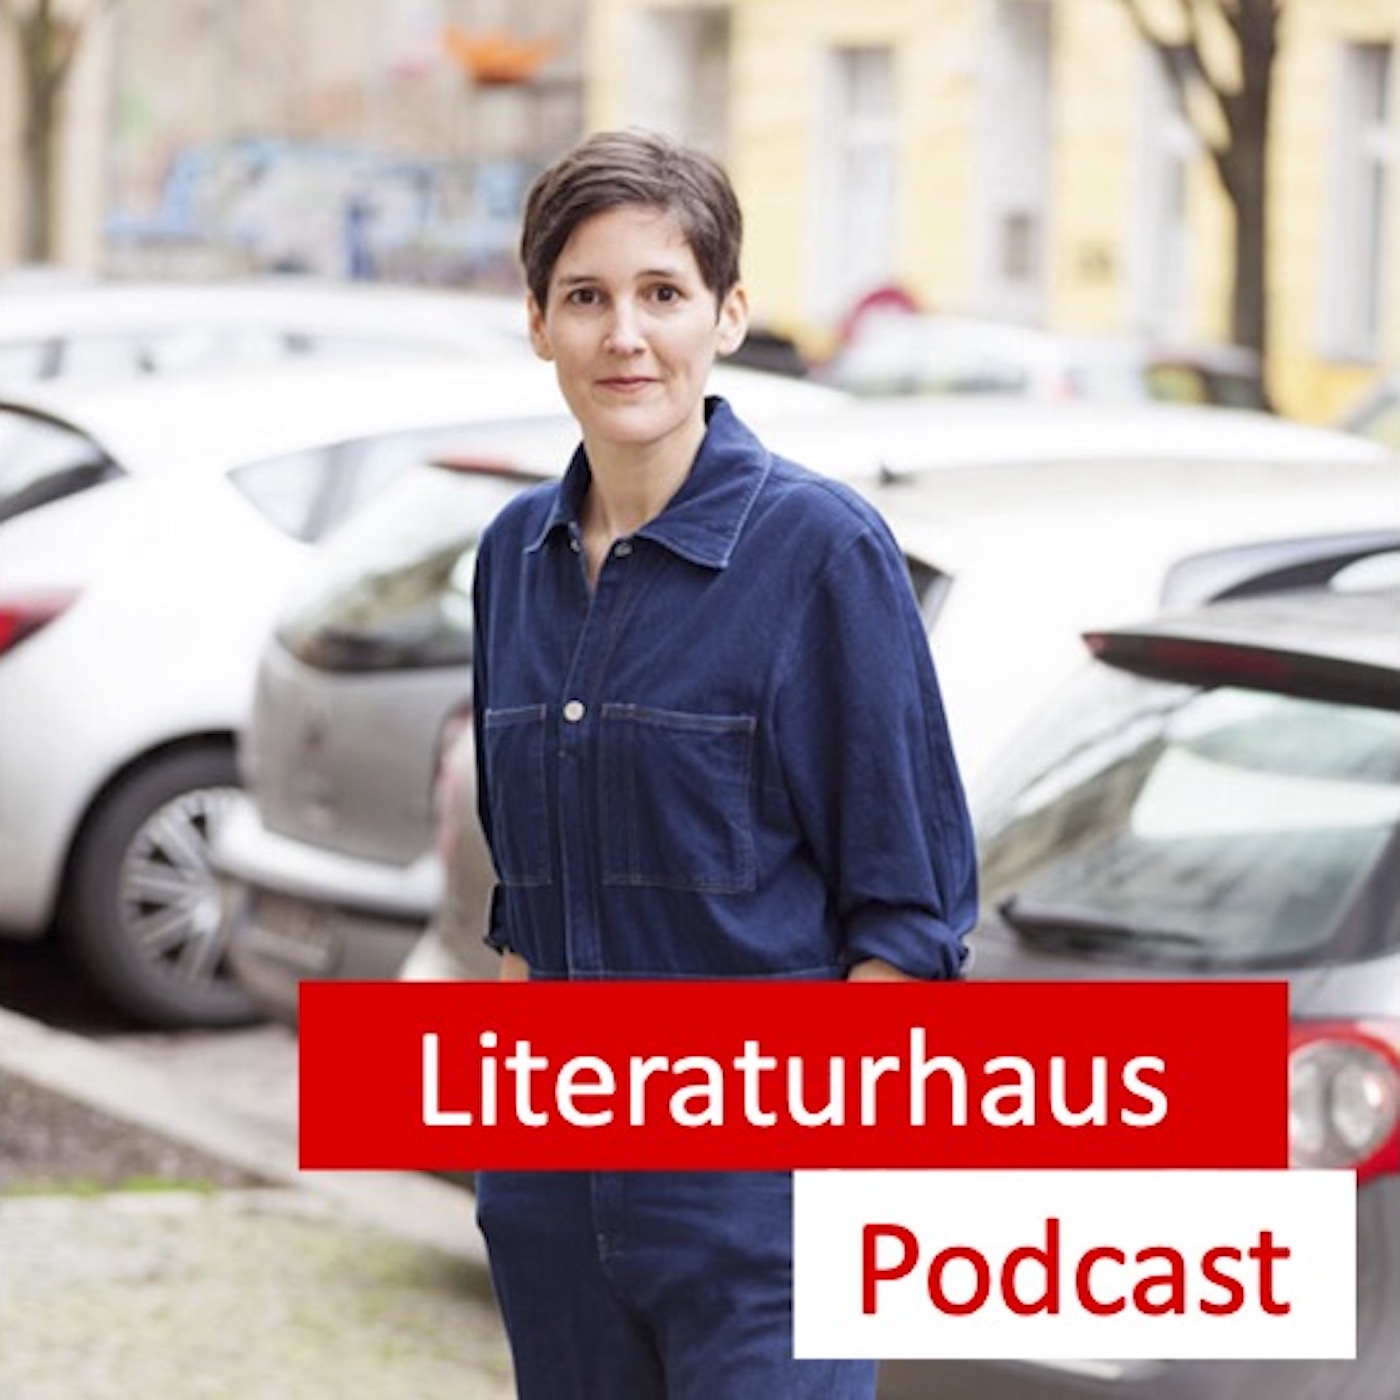 Porträtbild von Anke Stelling mit dem Literaturhaus-Podcast Logo.